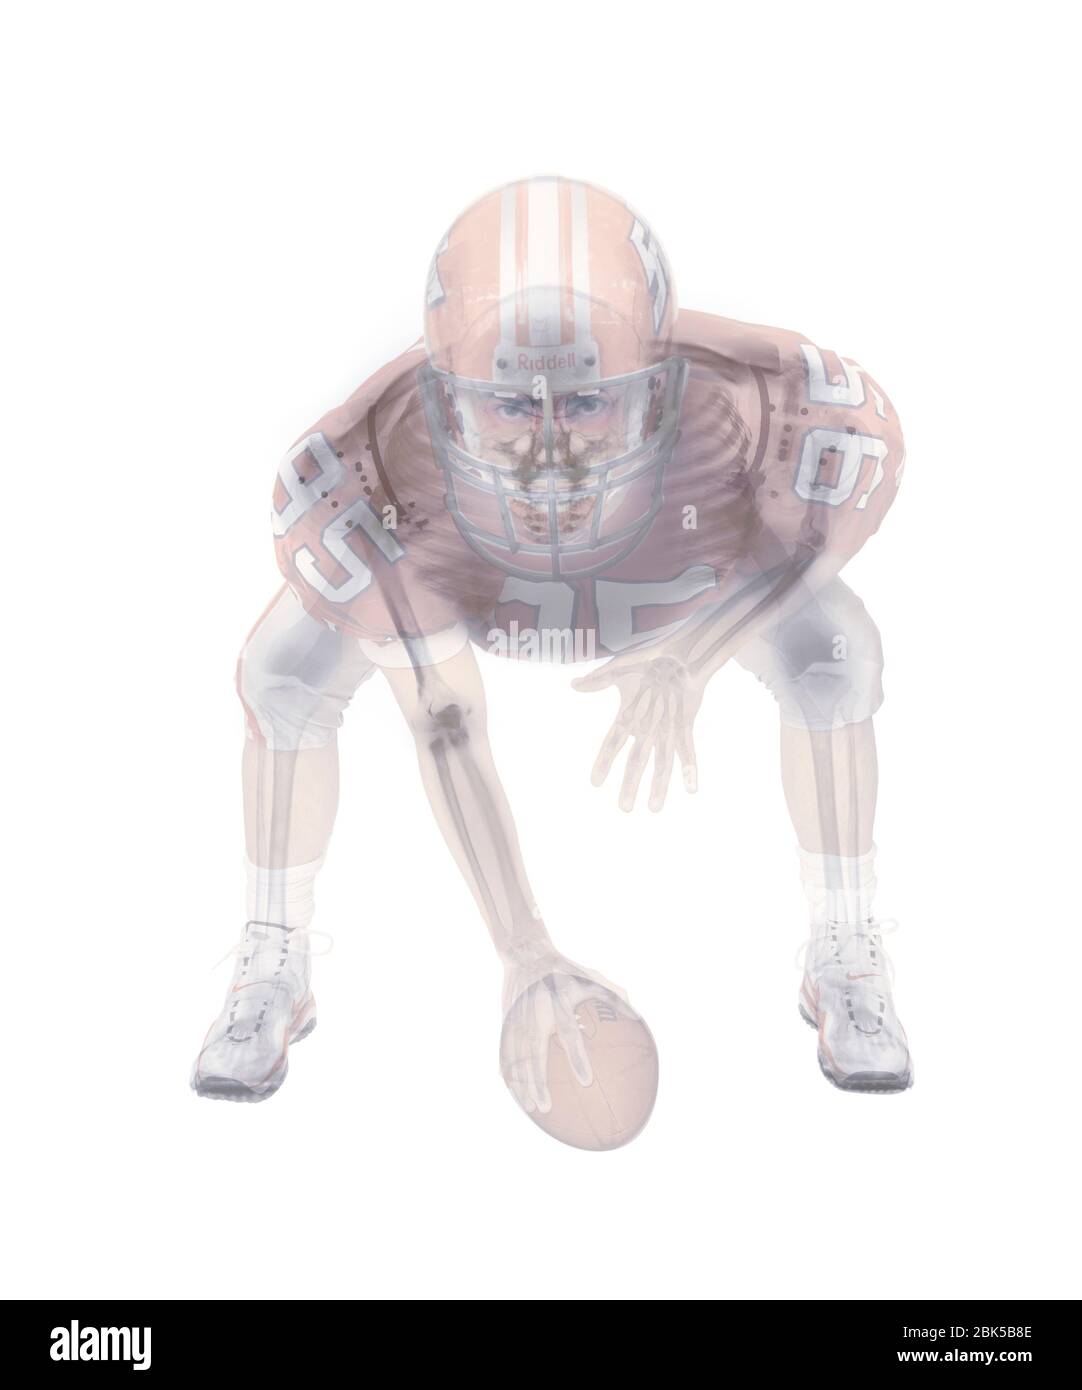 Squelette de joueur de football américain, radiographie colorée. Banque D'Images